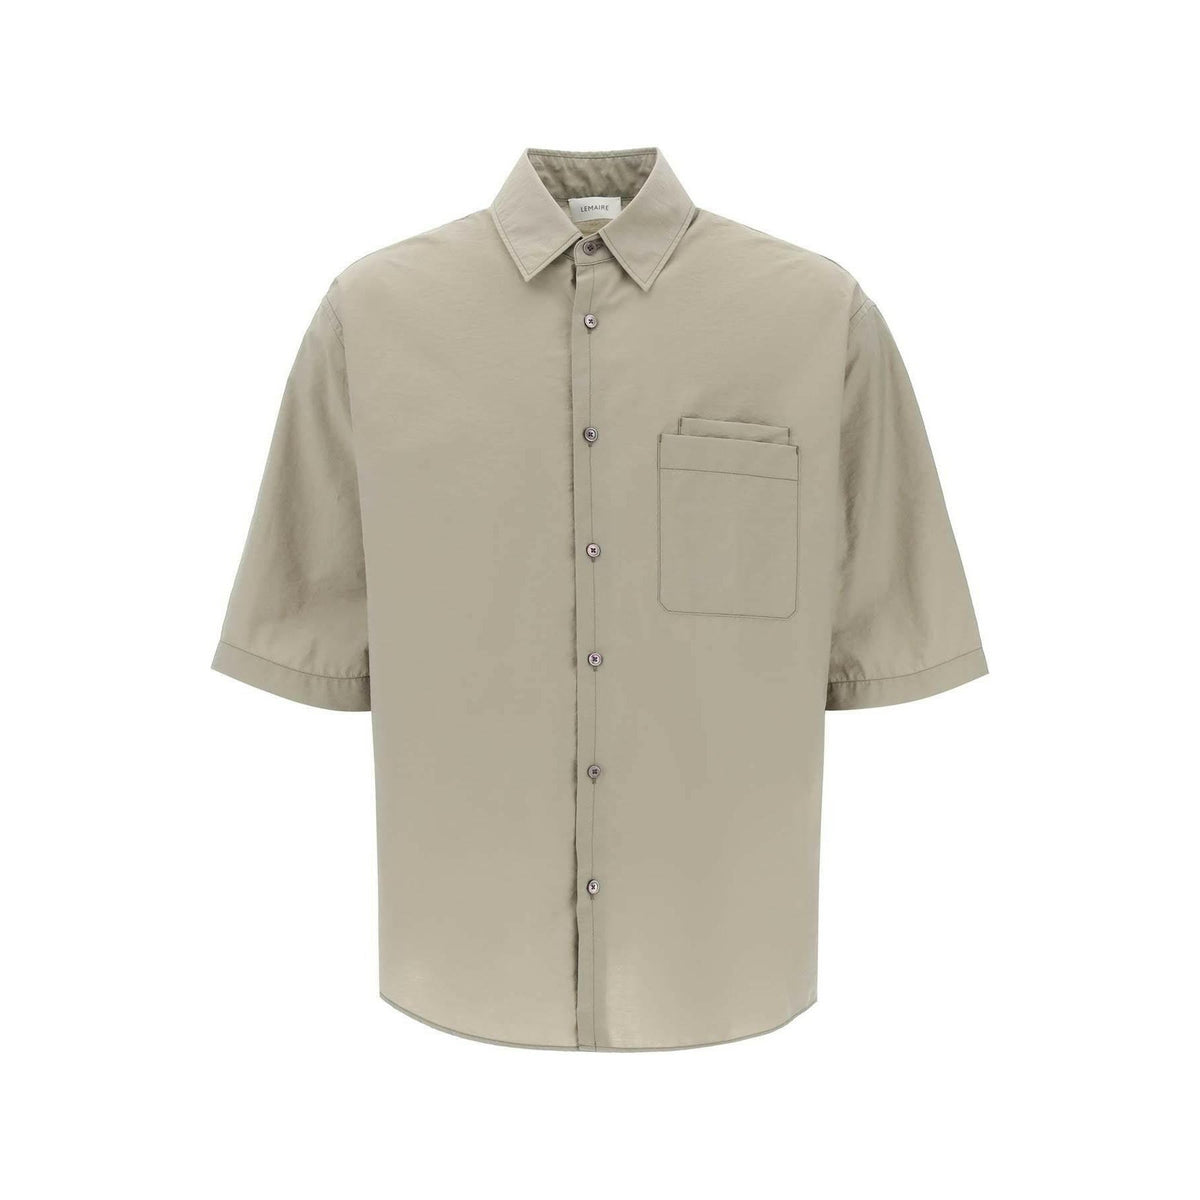 Dusty Khaki Washed Technical Cotton Double Pocket Short Sleeve Shirt LEMAIRE JOHN JULIA.